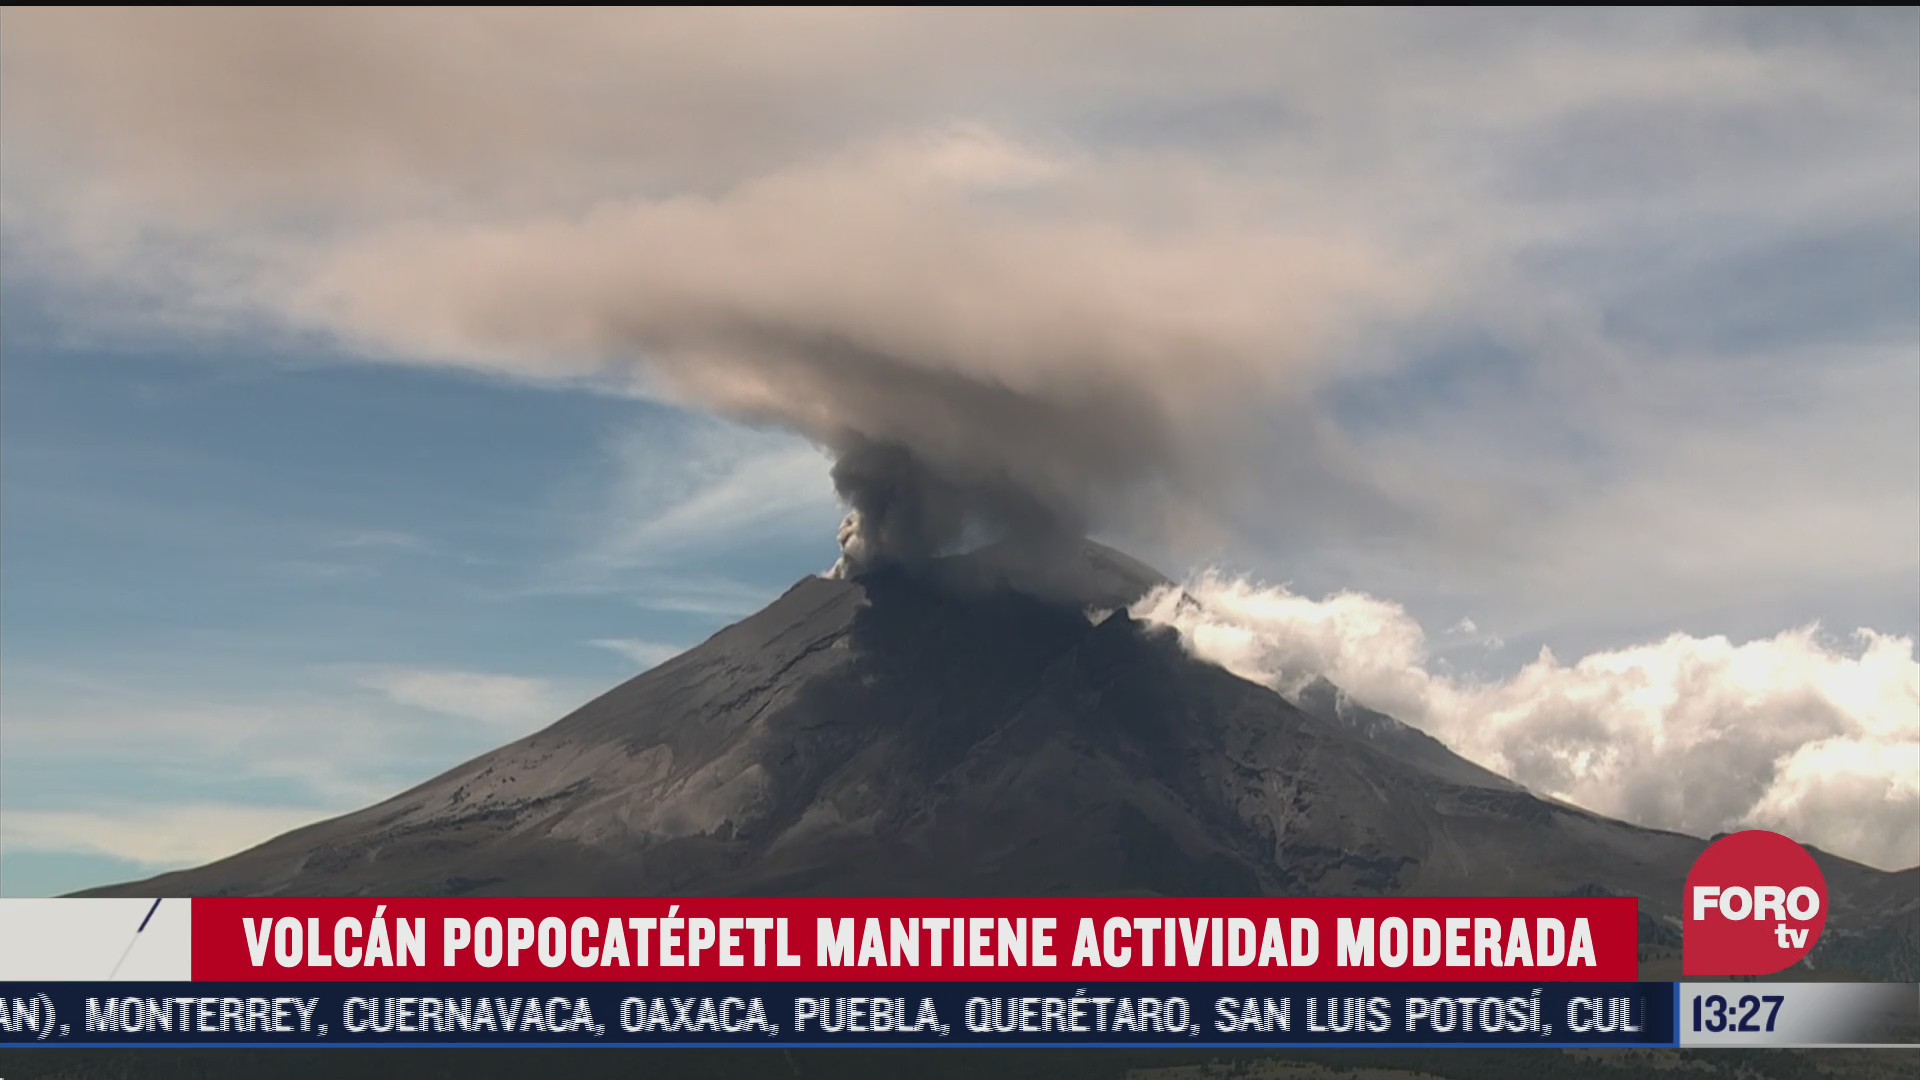 volcan popocatepetl mantiene actividad moderada